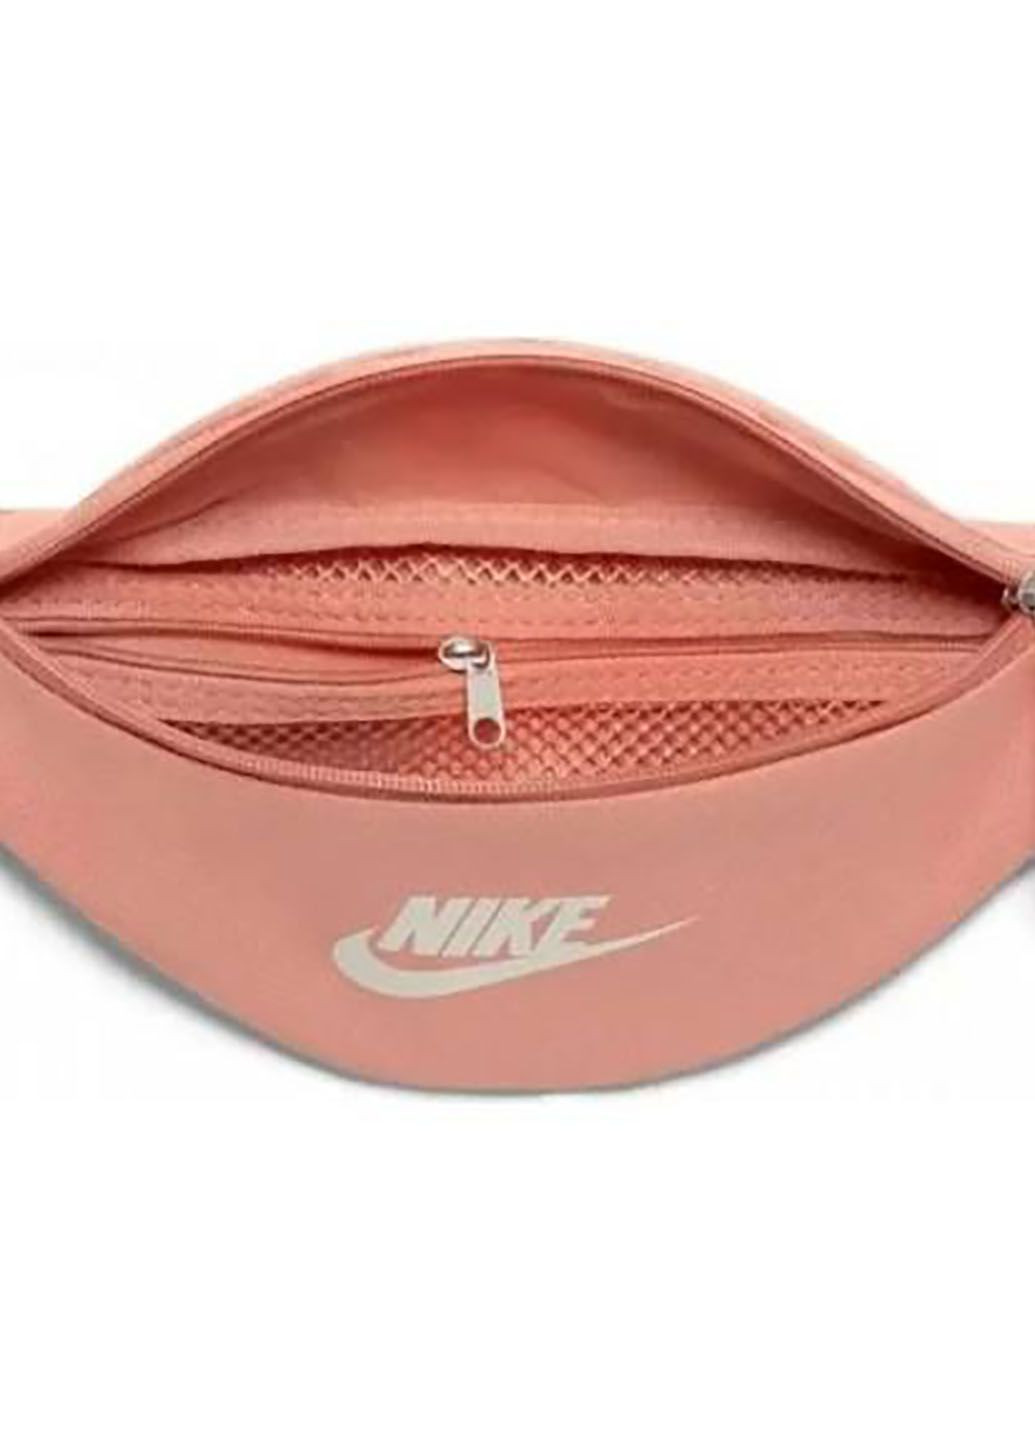 Бананка Nike nk heritage s waistpack pink (293850496)